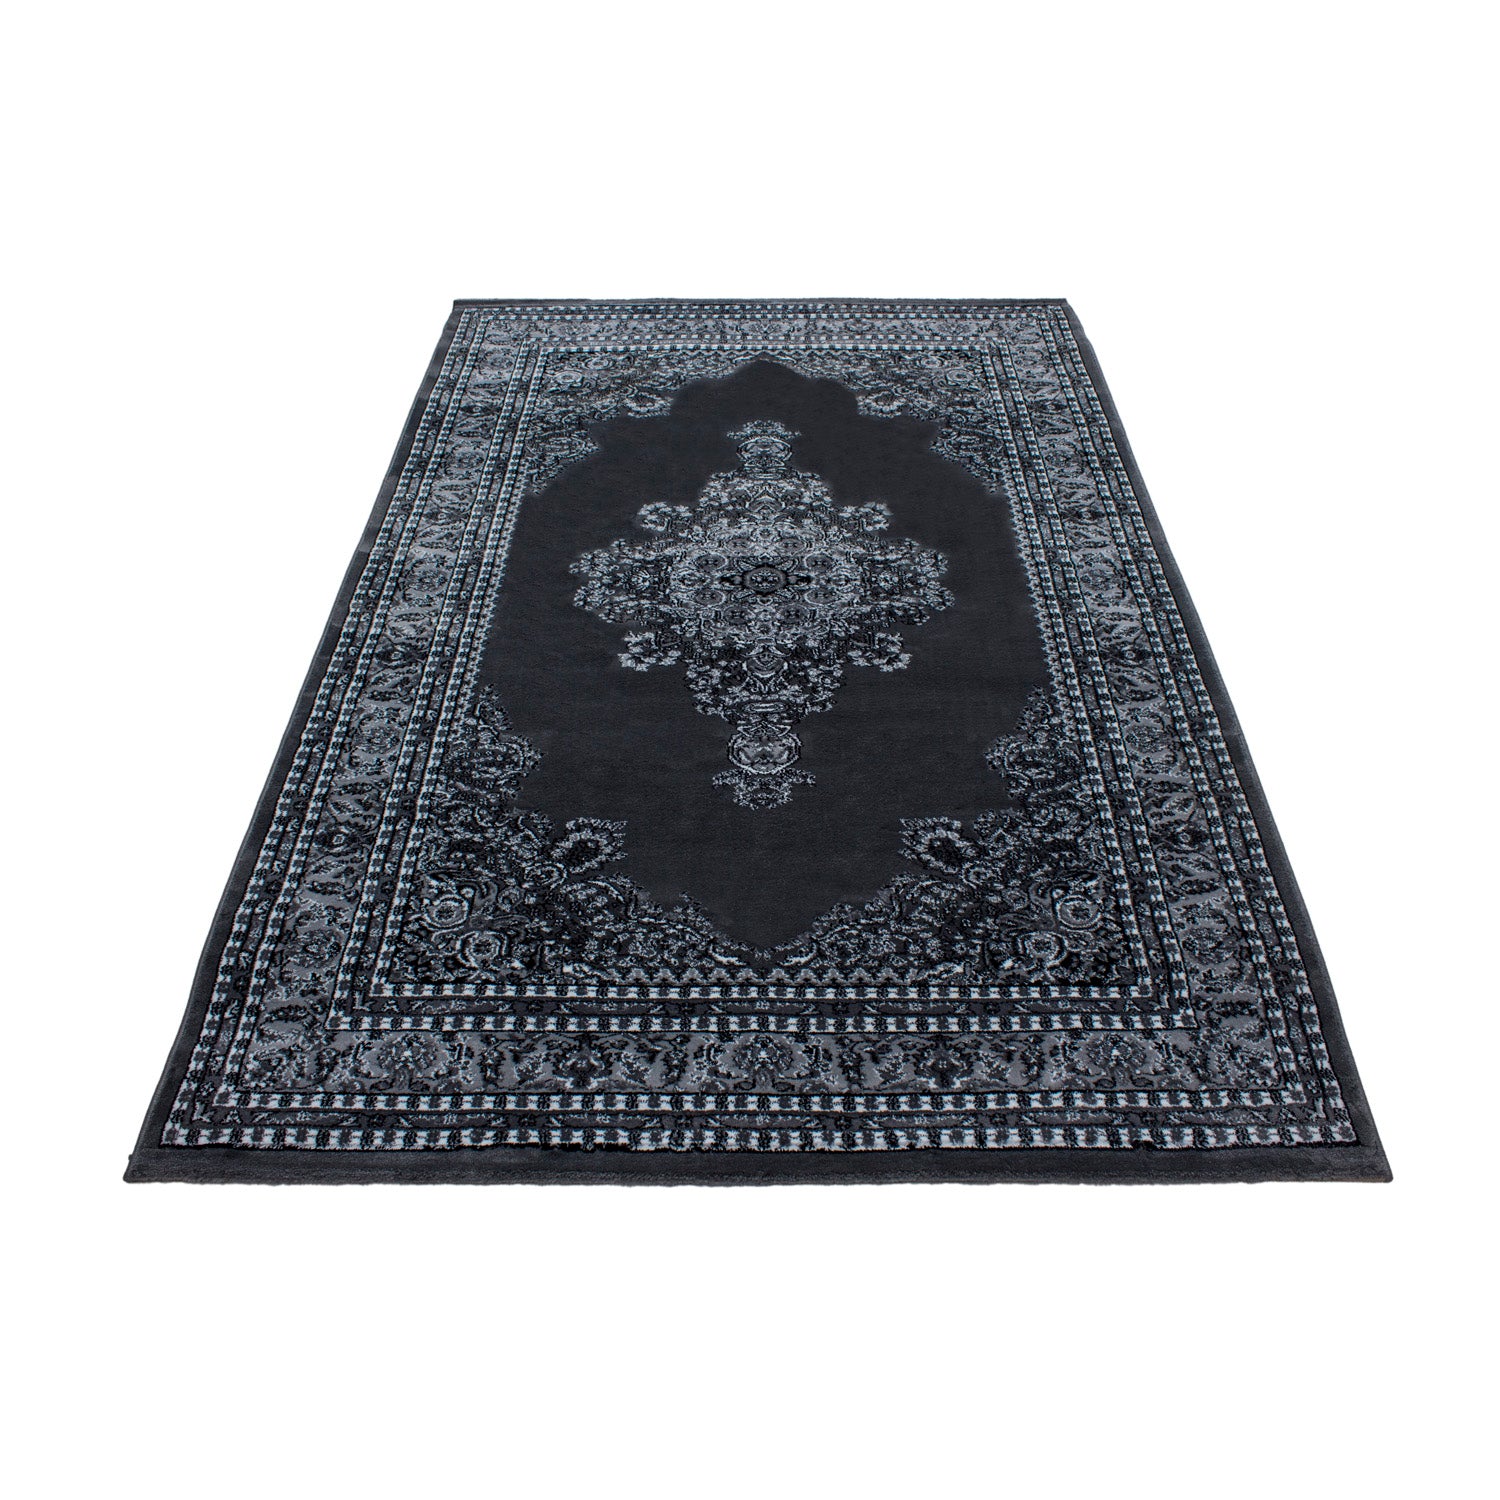 Klassik Orient Teppich Edle Bordüre Ornament Wohnzimmerteppich Schwarz Grau